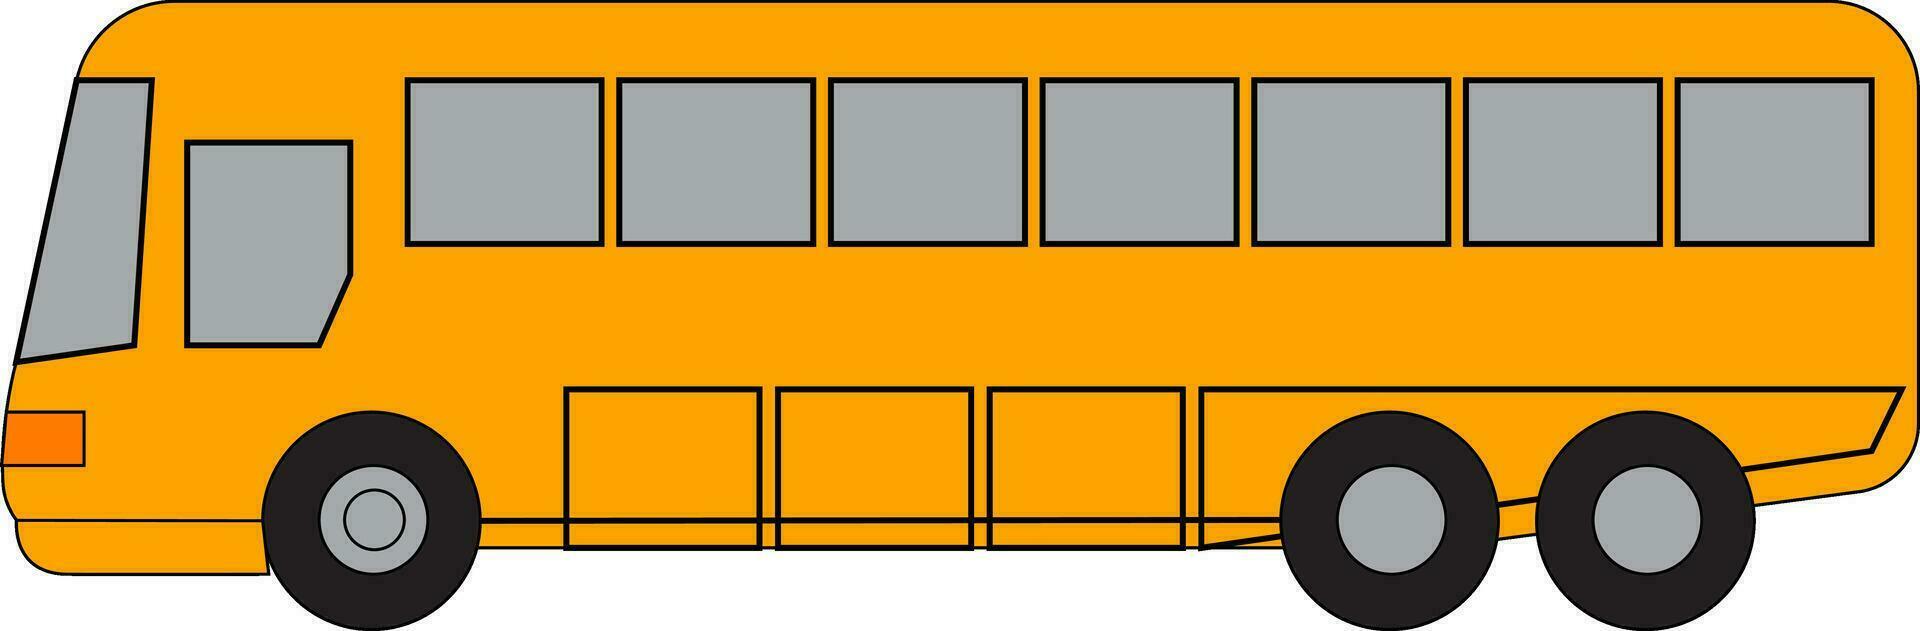 rosso e nero Doppio decker autobus vettore o colore illustrazione